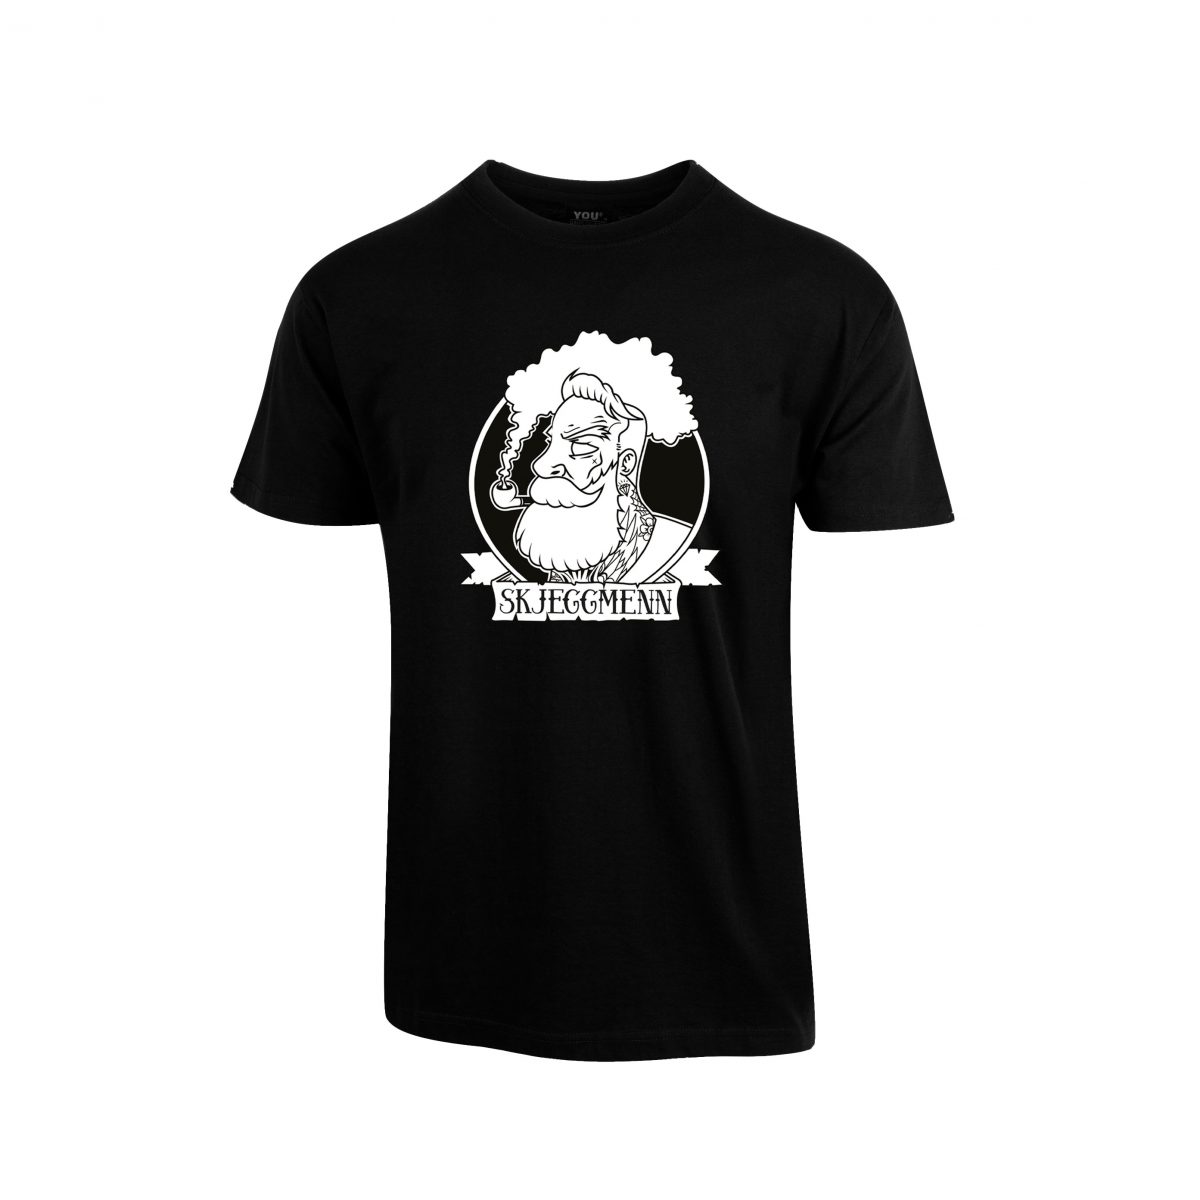 Svart t-skjorte med stor Skjeggmenn-logo